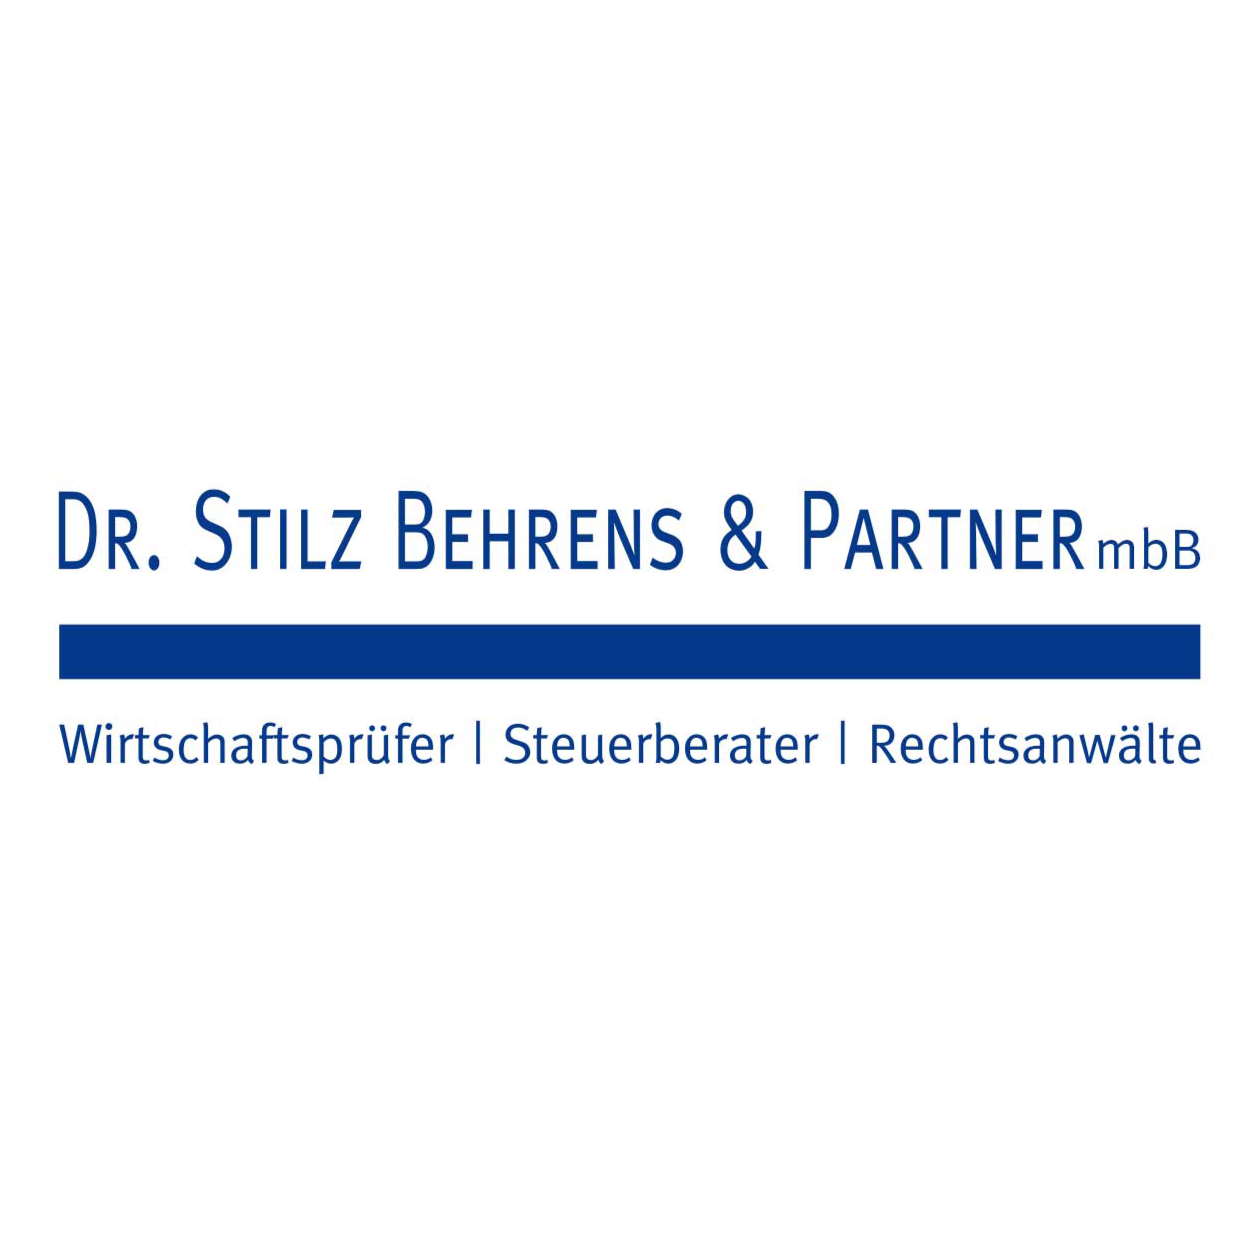 Dr. Stilz Behrens & Partner mbB in Freiburg im Breisgau - Logo